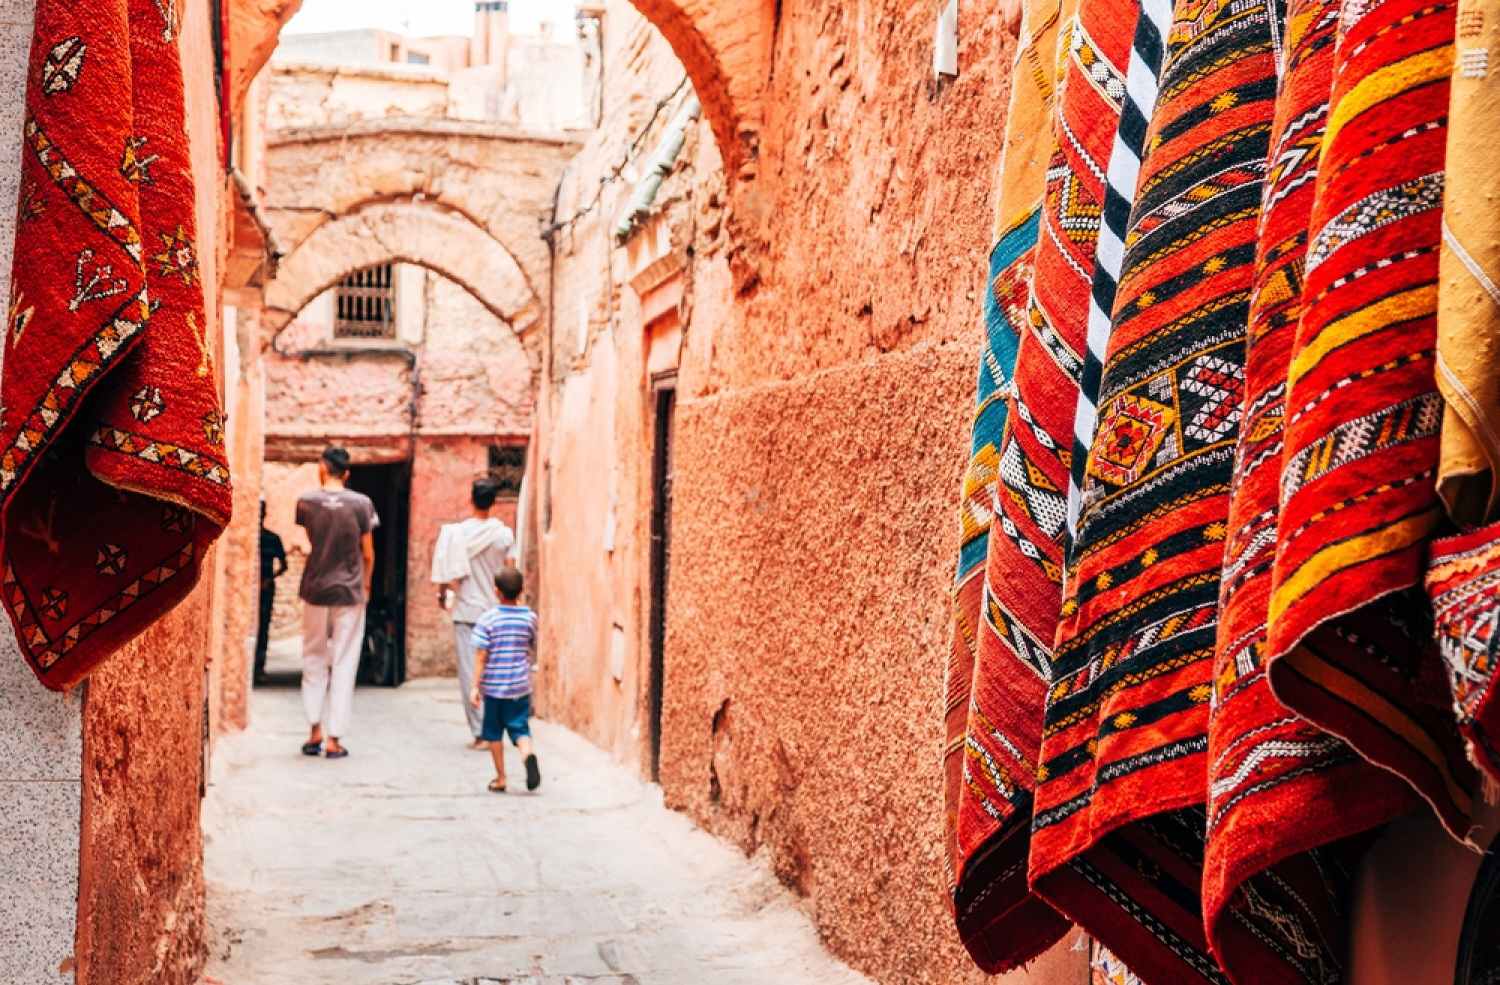 Day 2: Exploring Marrakech